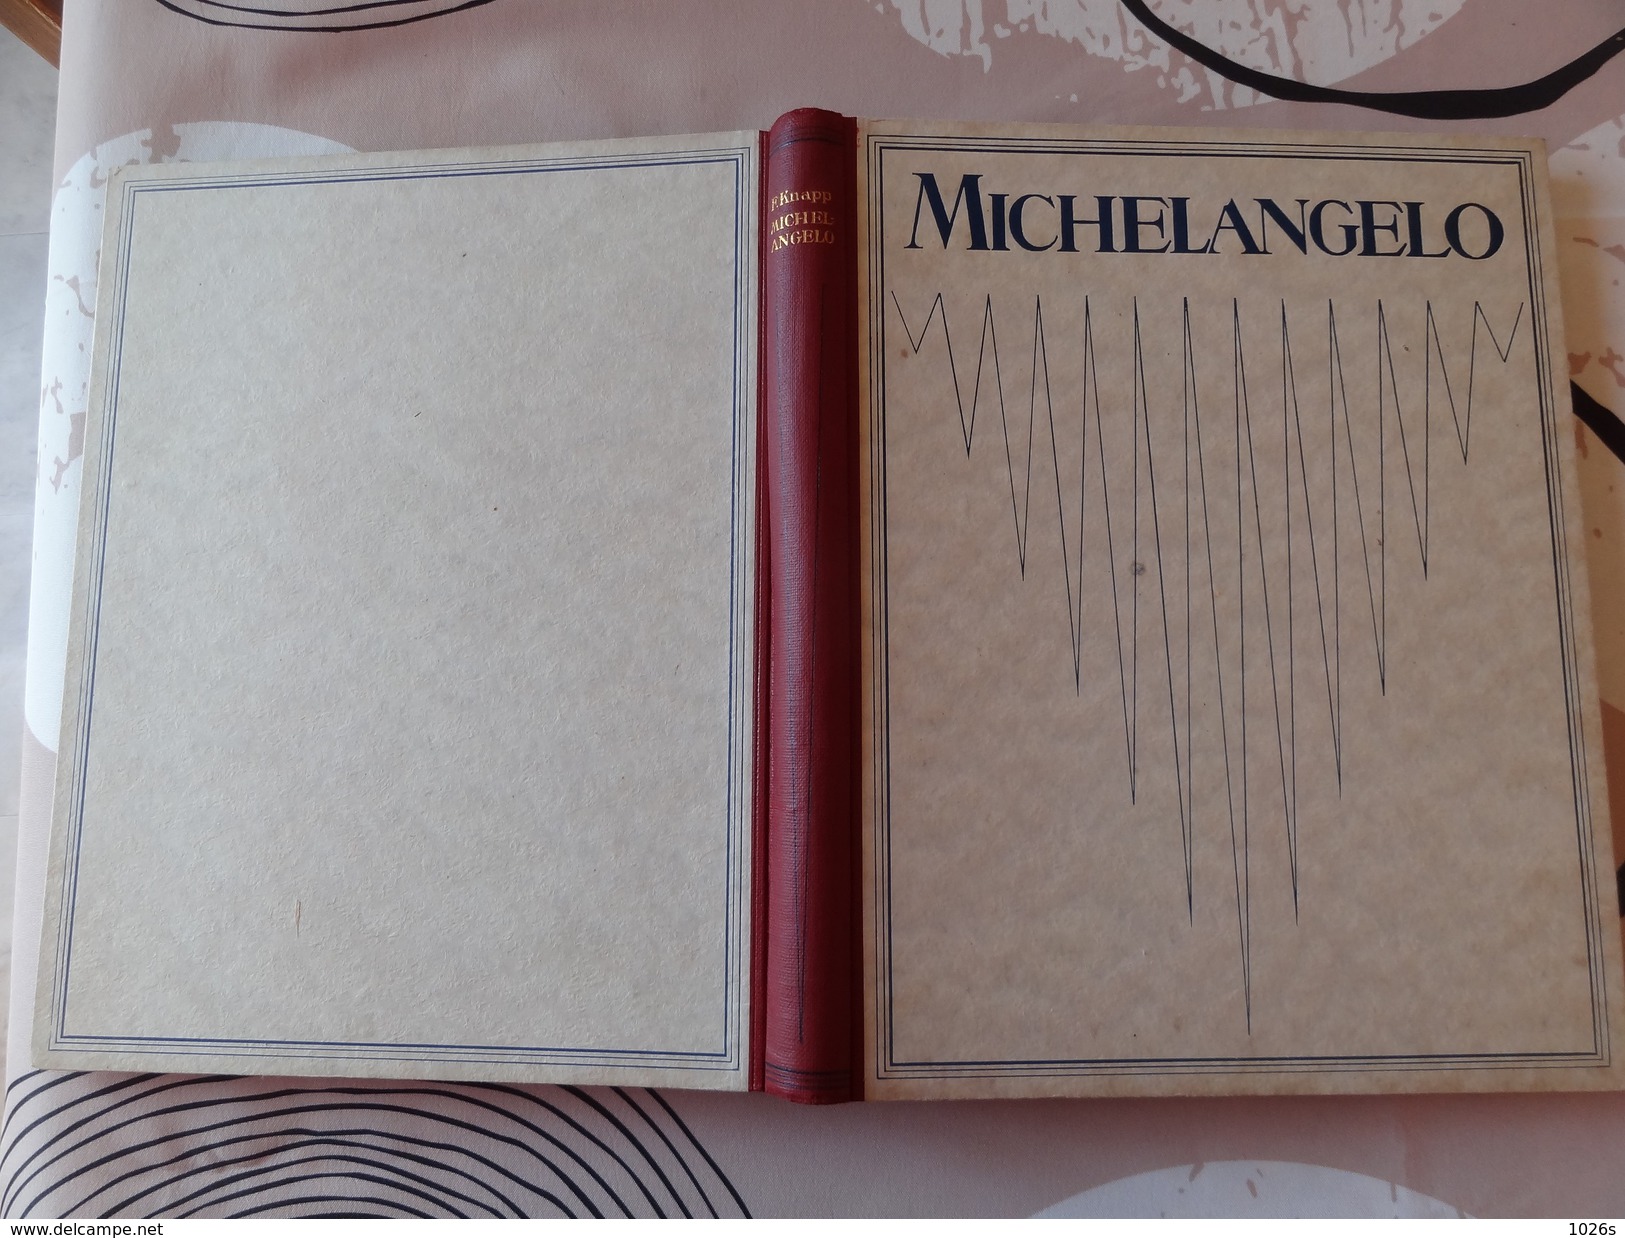 LIVRE D'ART SUR MICHELANGELO DE 1923 PAR FRITZ KNAPP PAR LES EDITIONS F.BRUCKMANN - MUNCHEN - Musea & Tentoonstellingen